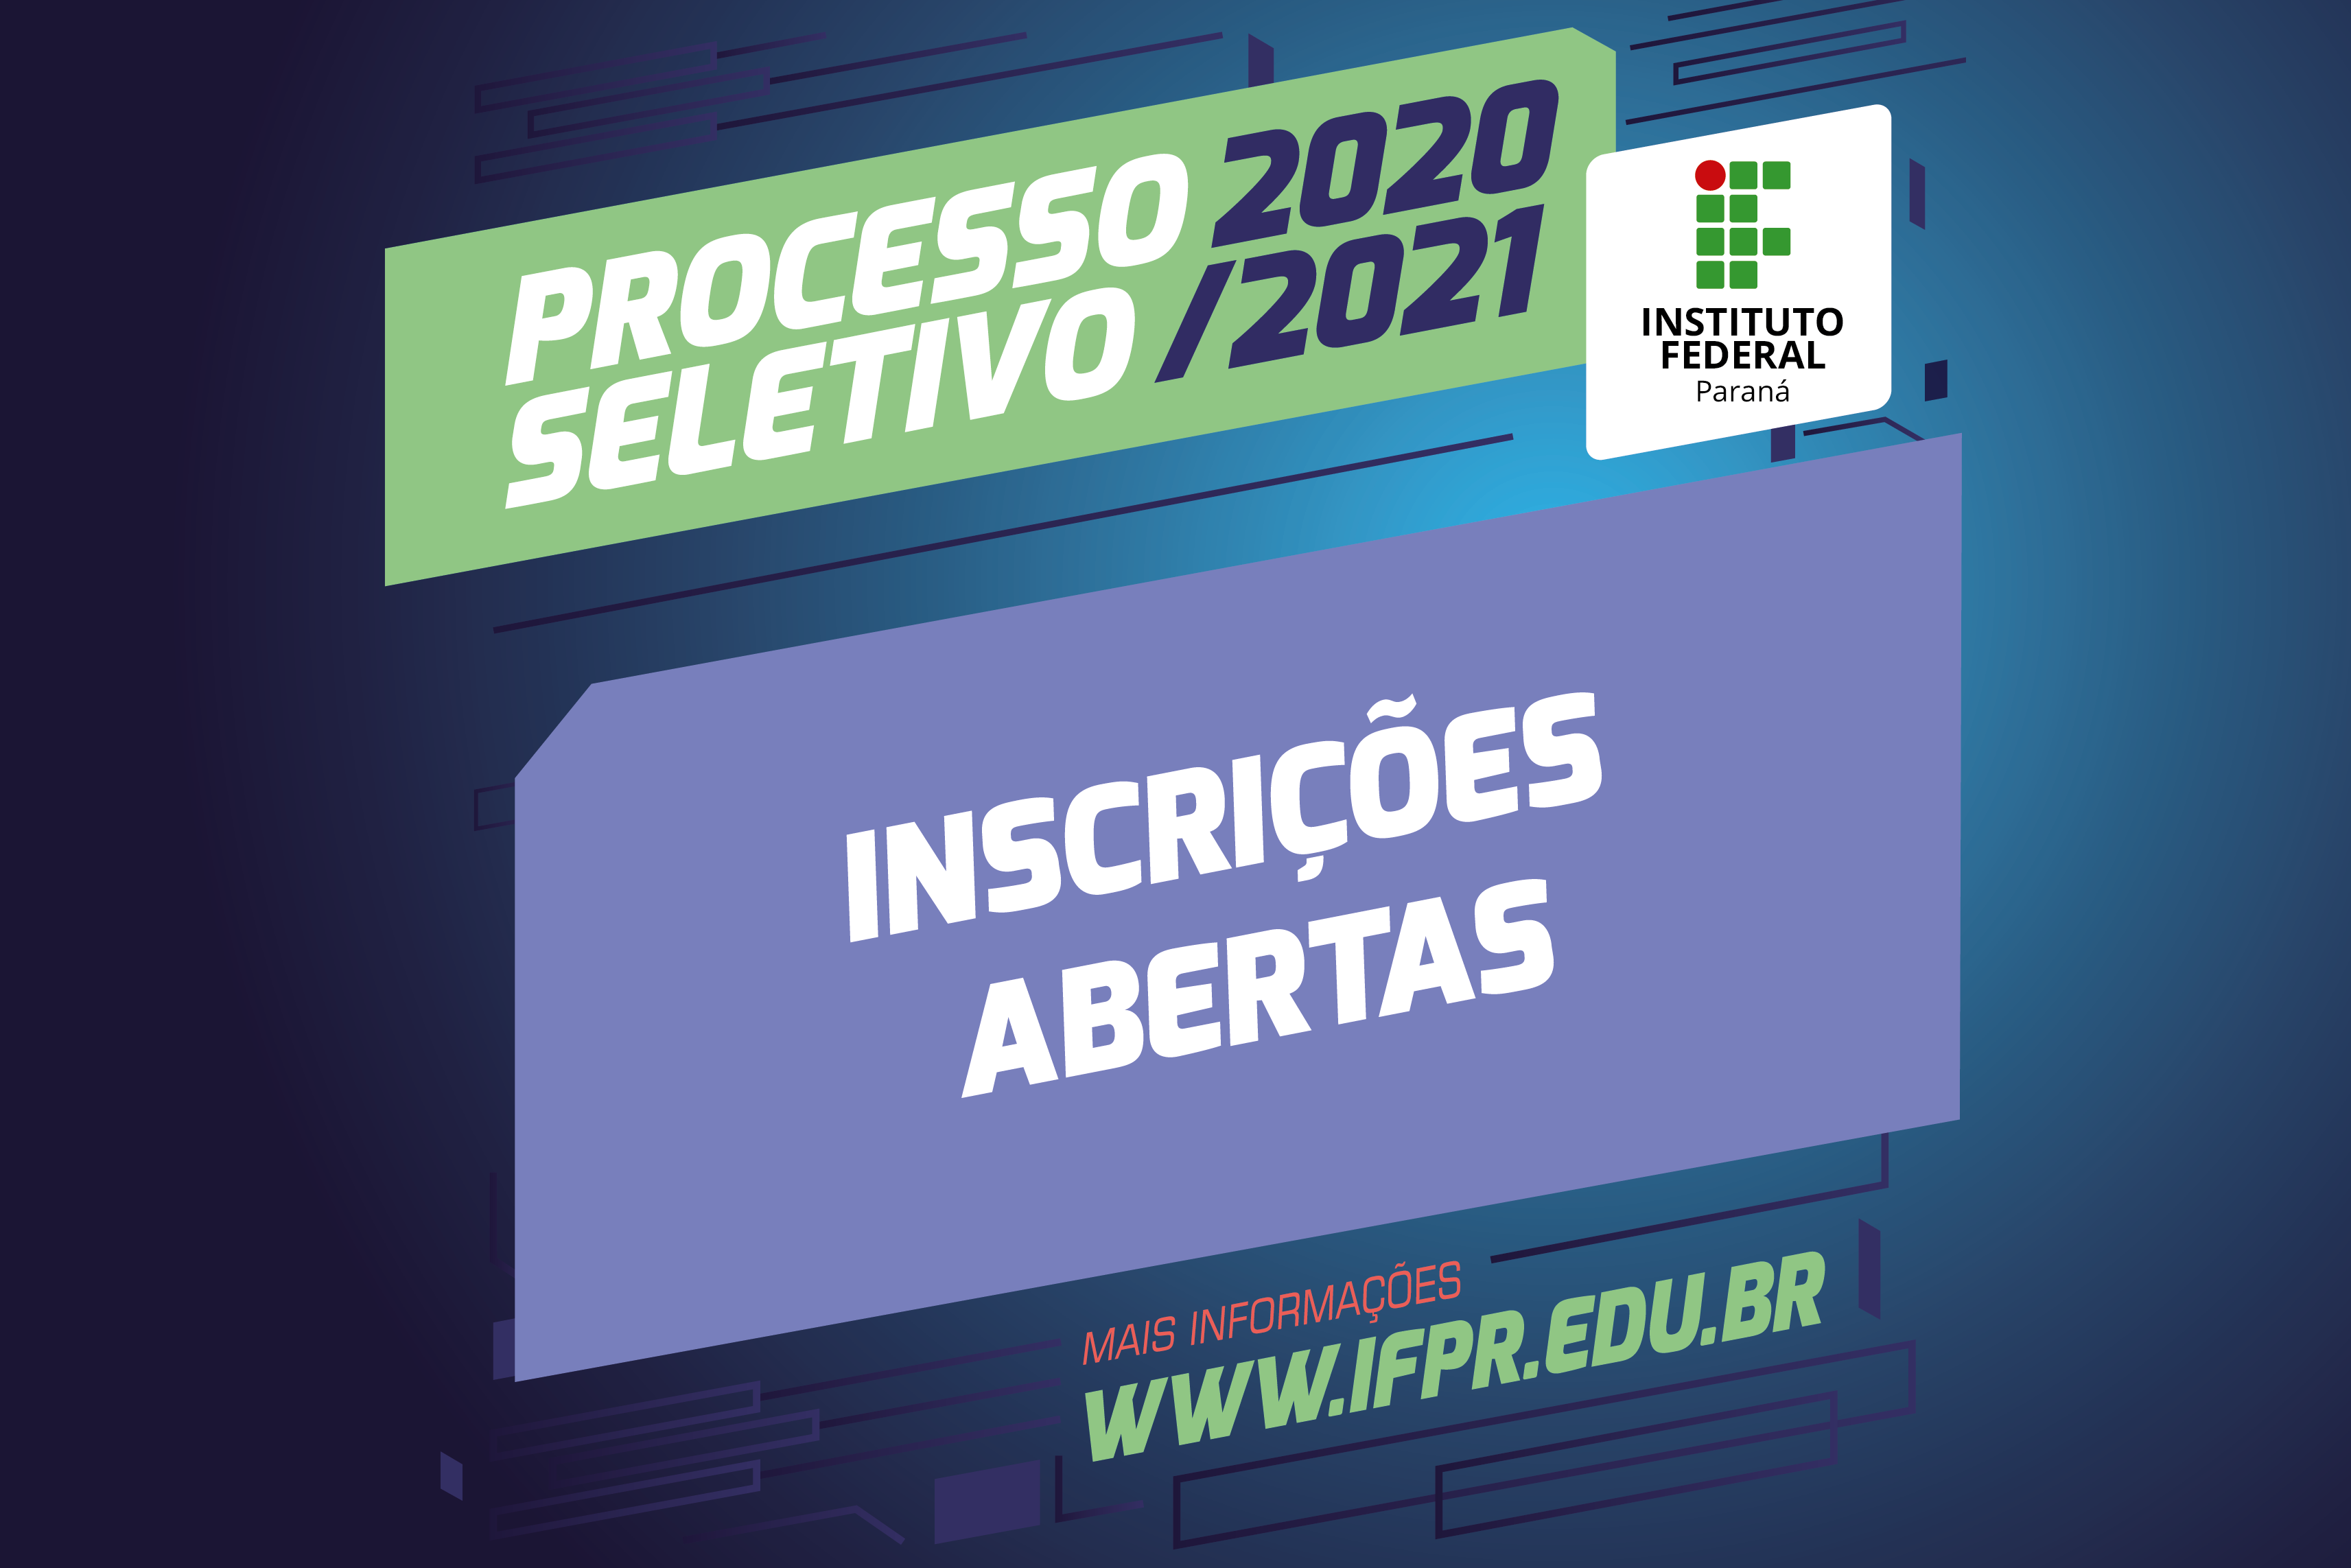 "Processo Seletivo 2020/2021. Inscrições abertas. www.ifpr.edu.br."